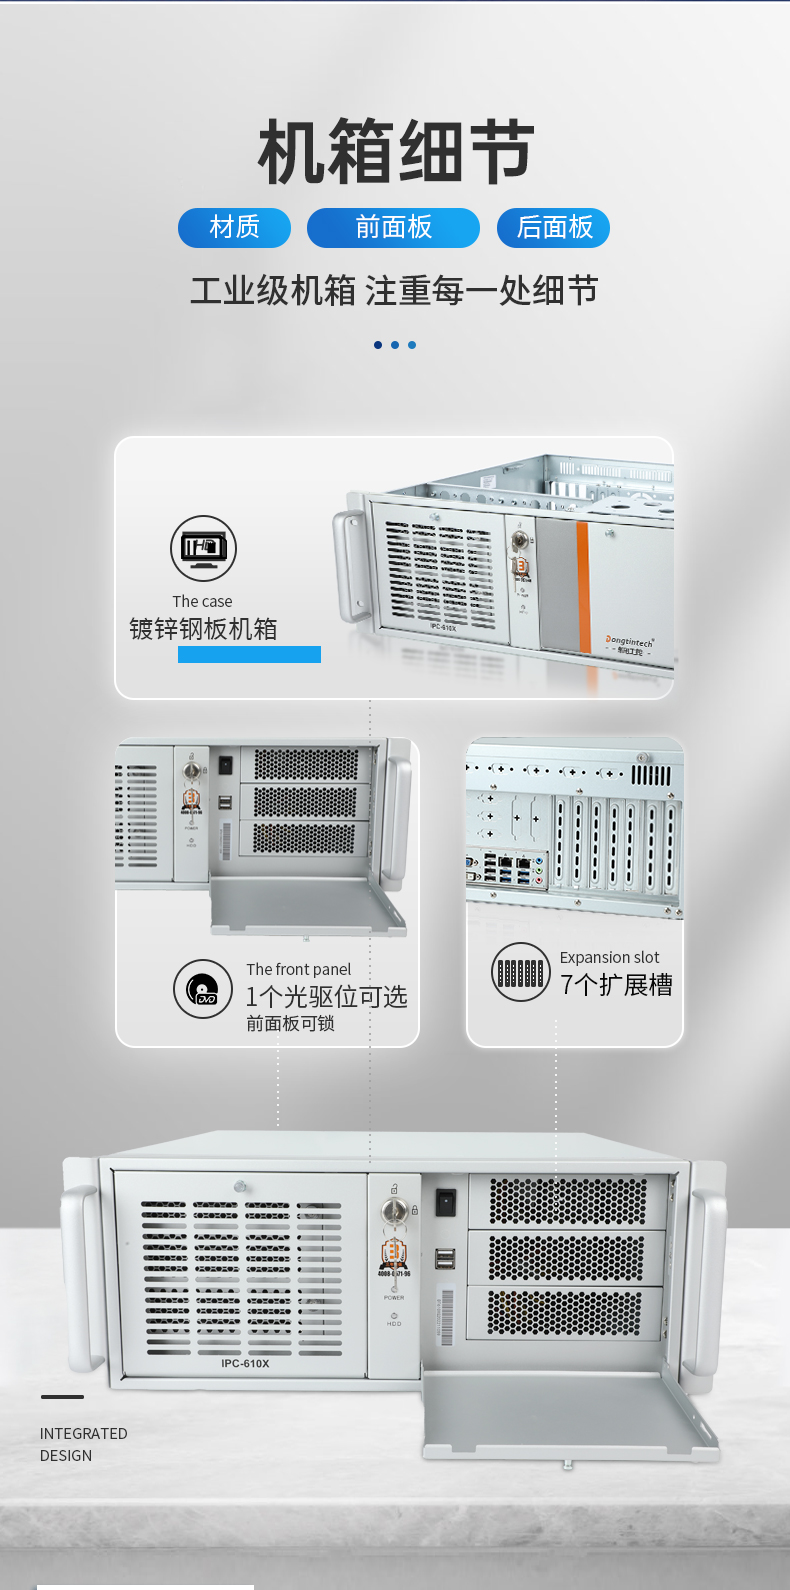 东田国产化工控机,工业控制计算机,DT-610X-U6780MA.jpg